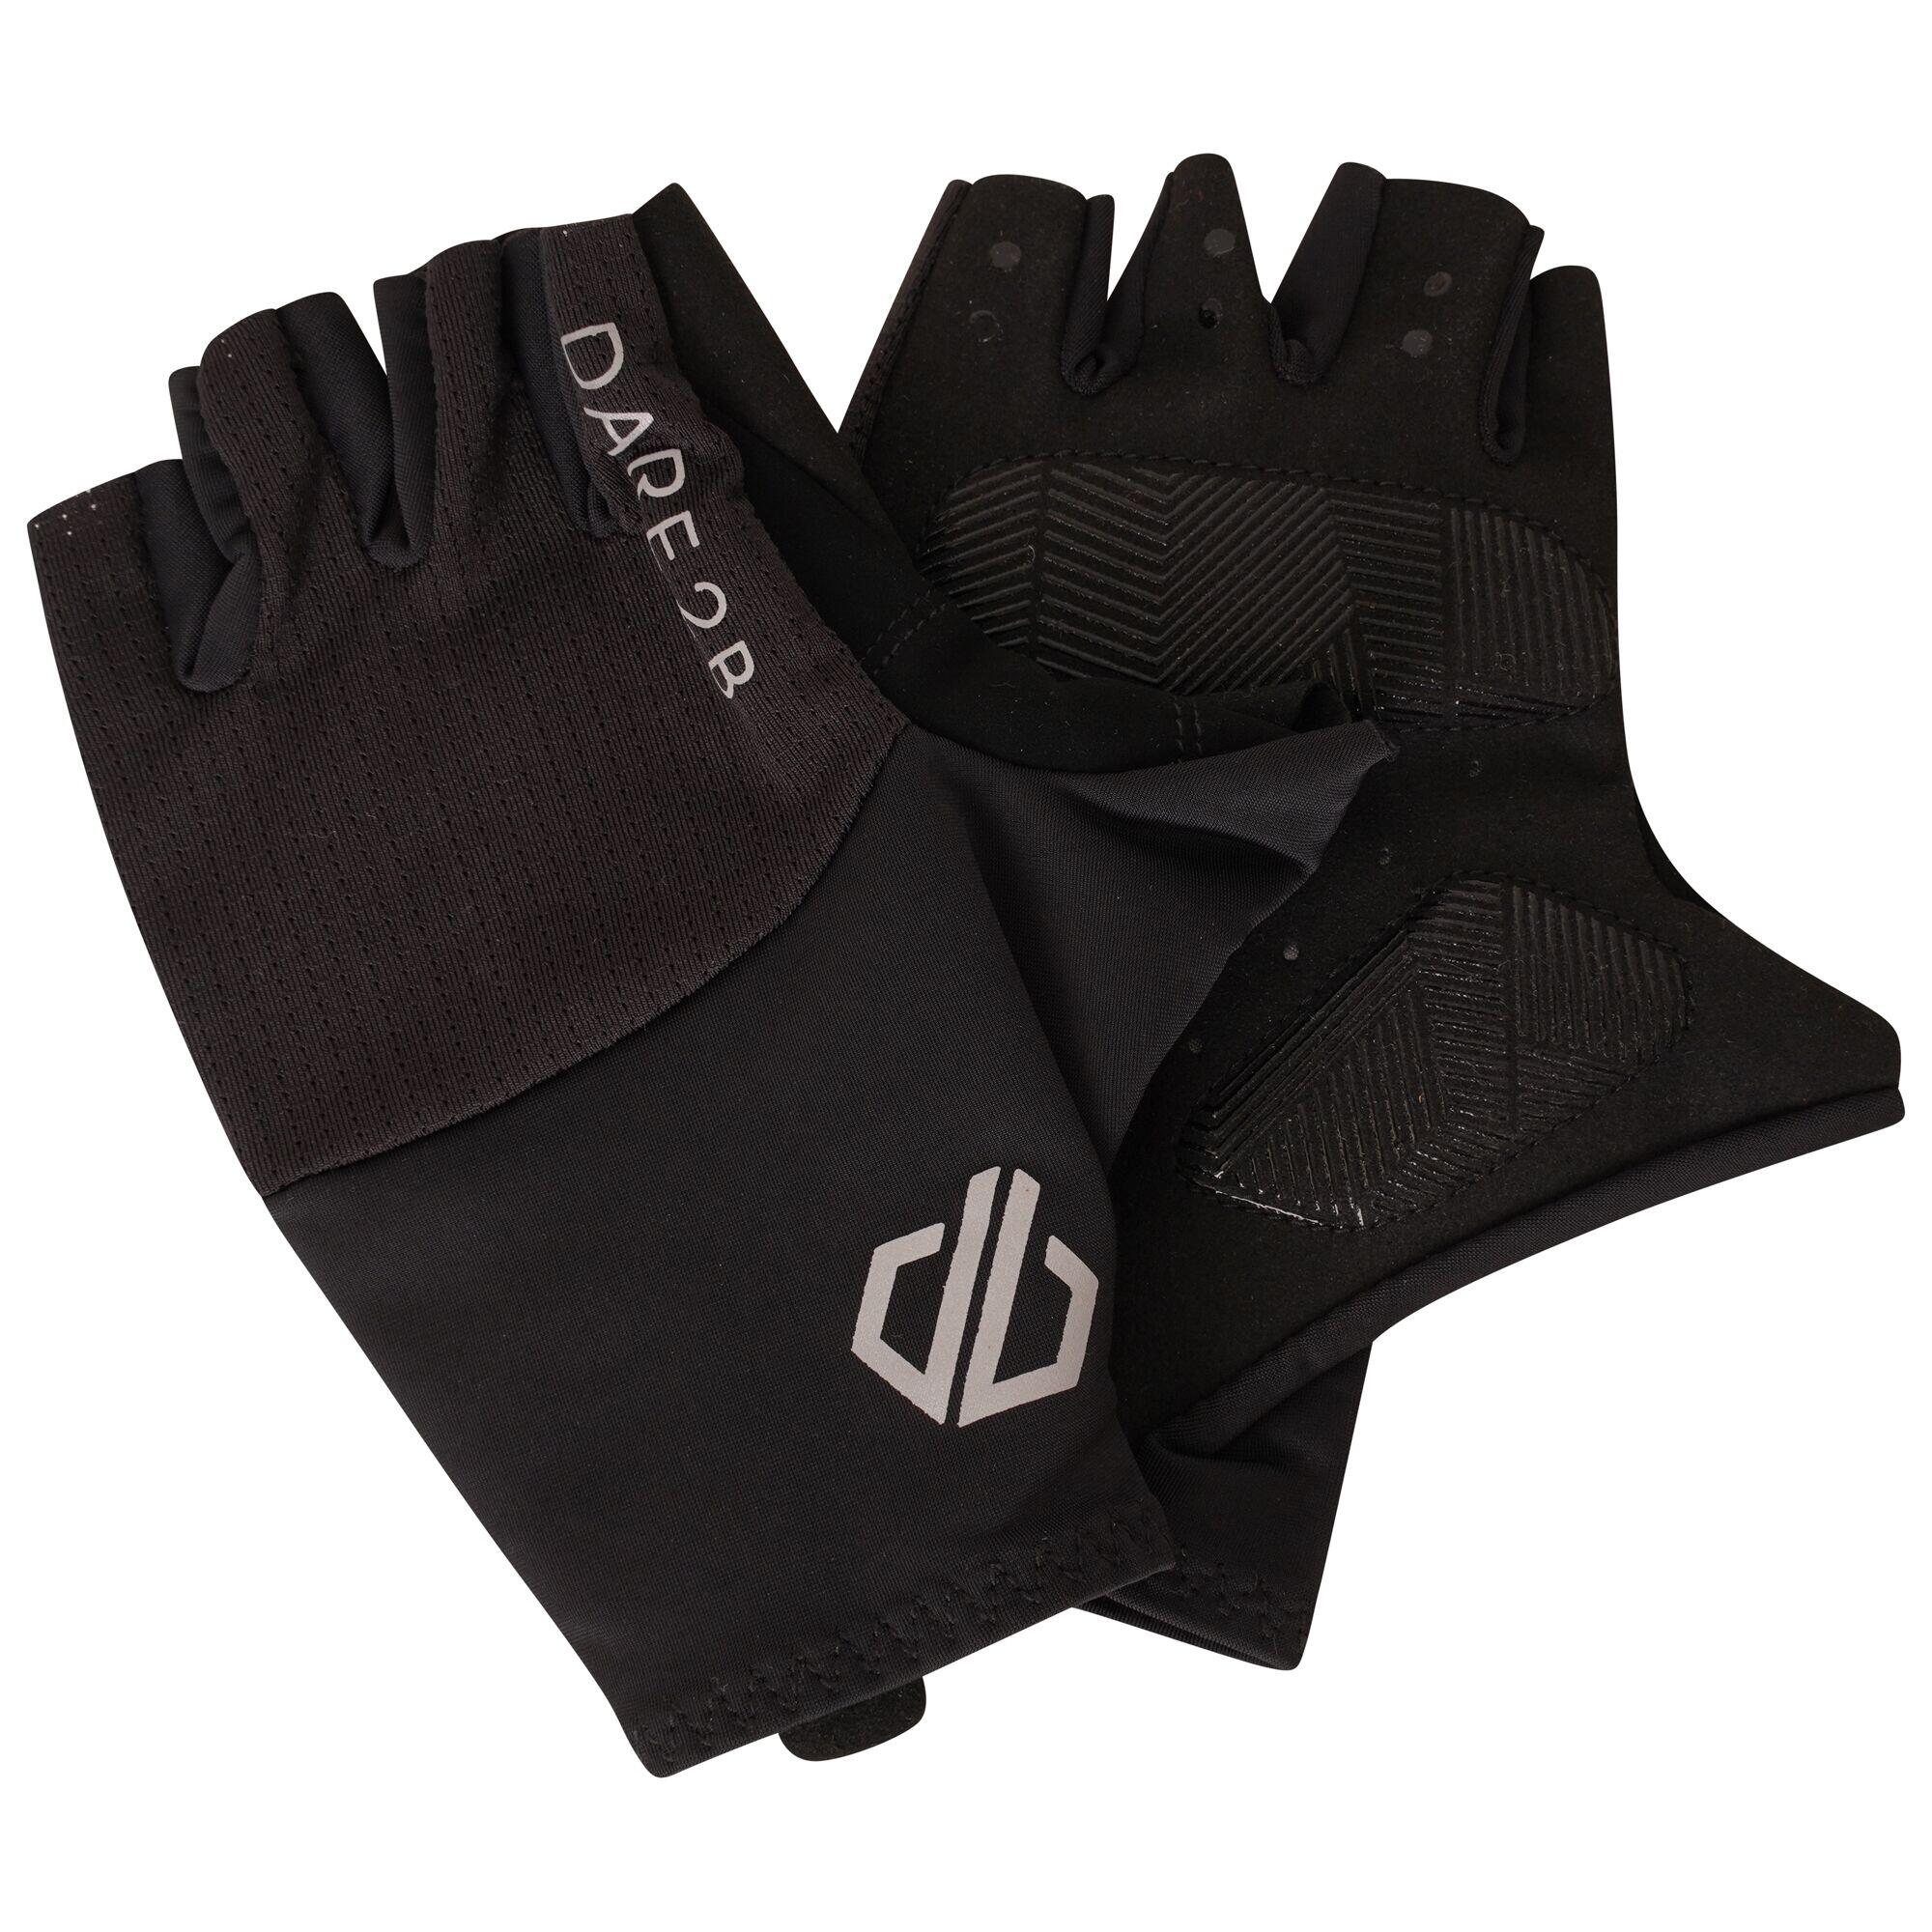 Dare 2b - Men's Forcible II Fingerless Gloves 2/4